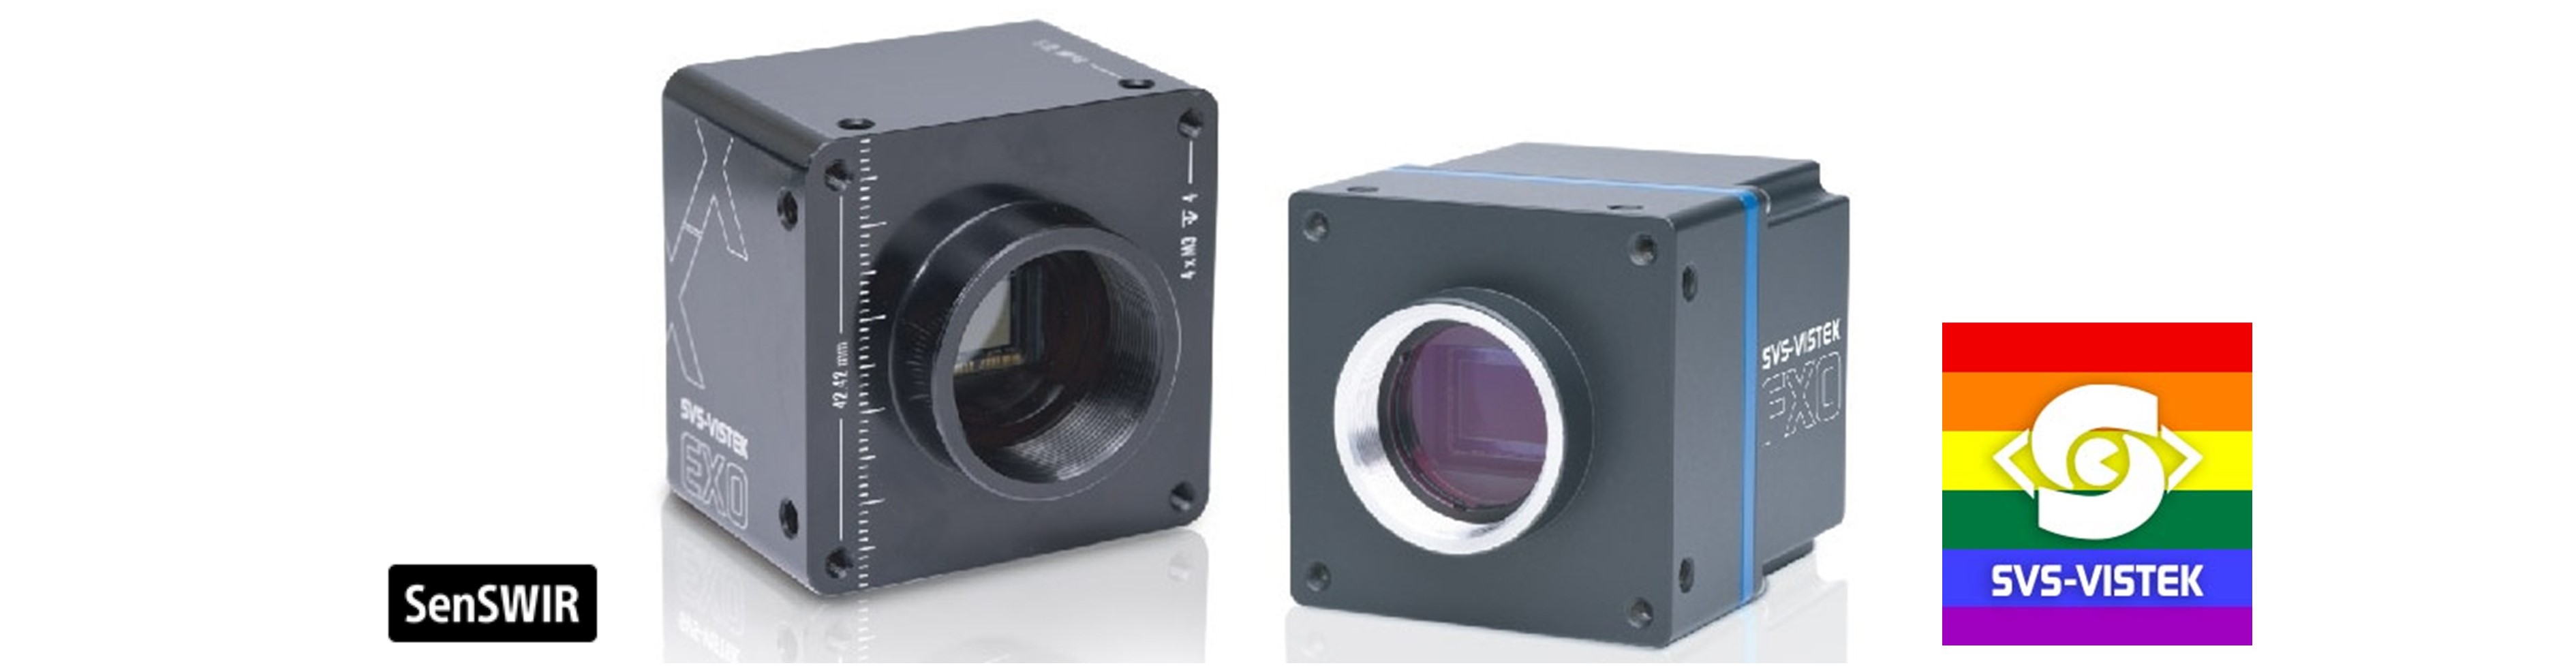 産業用Webカメラ IDS uEye XC 発売開始